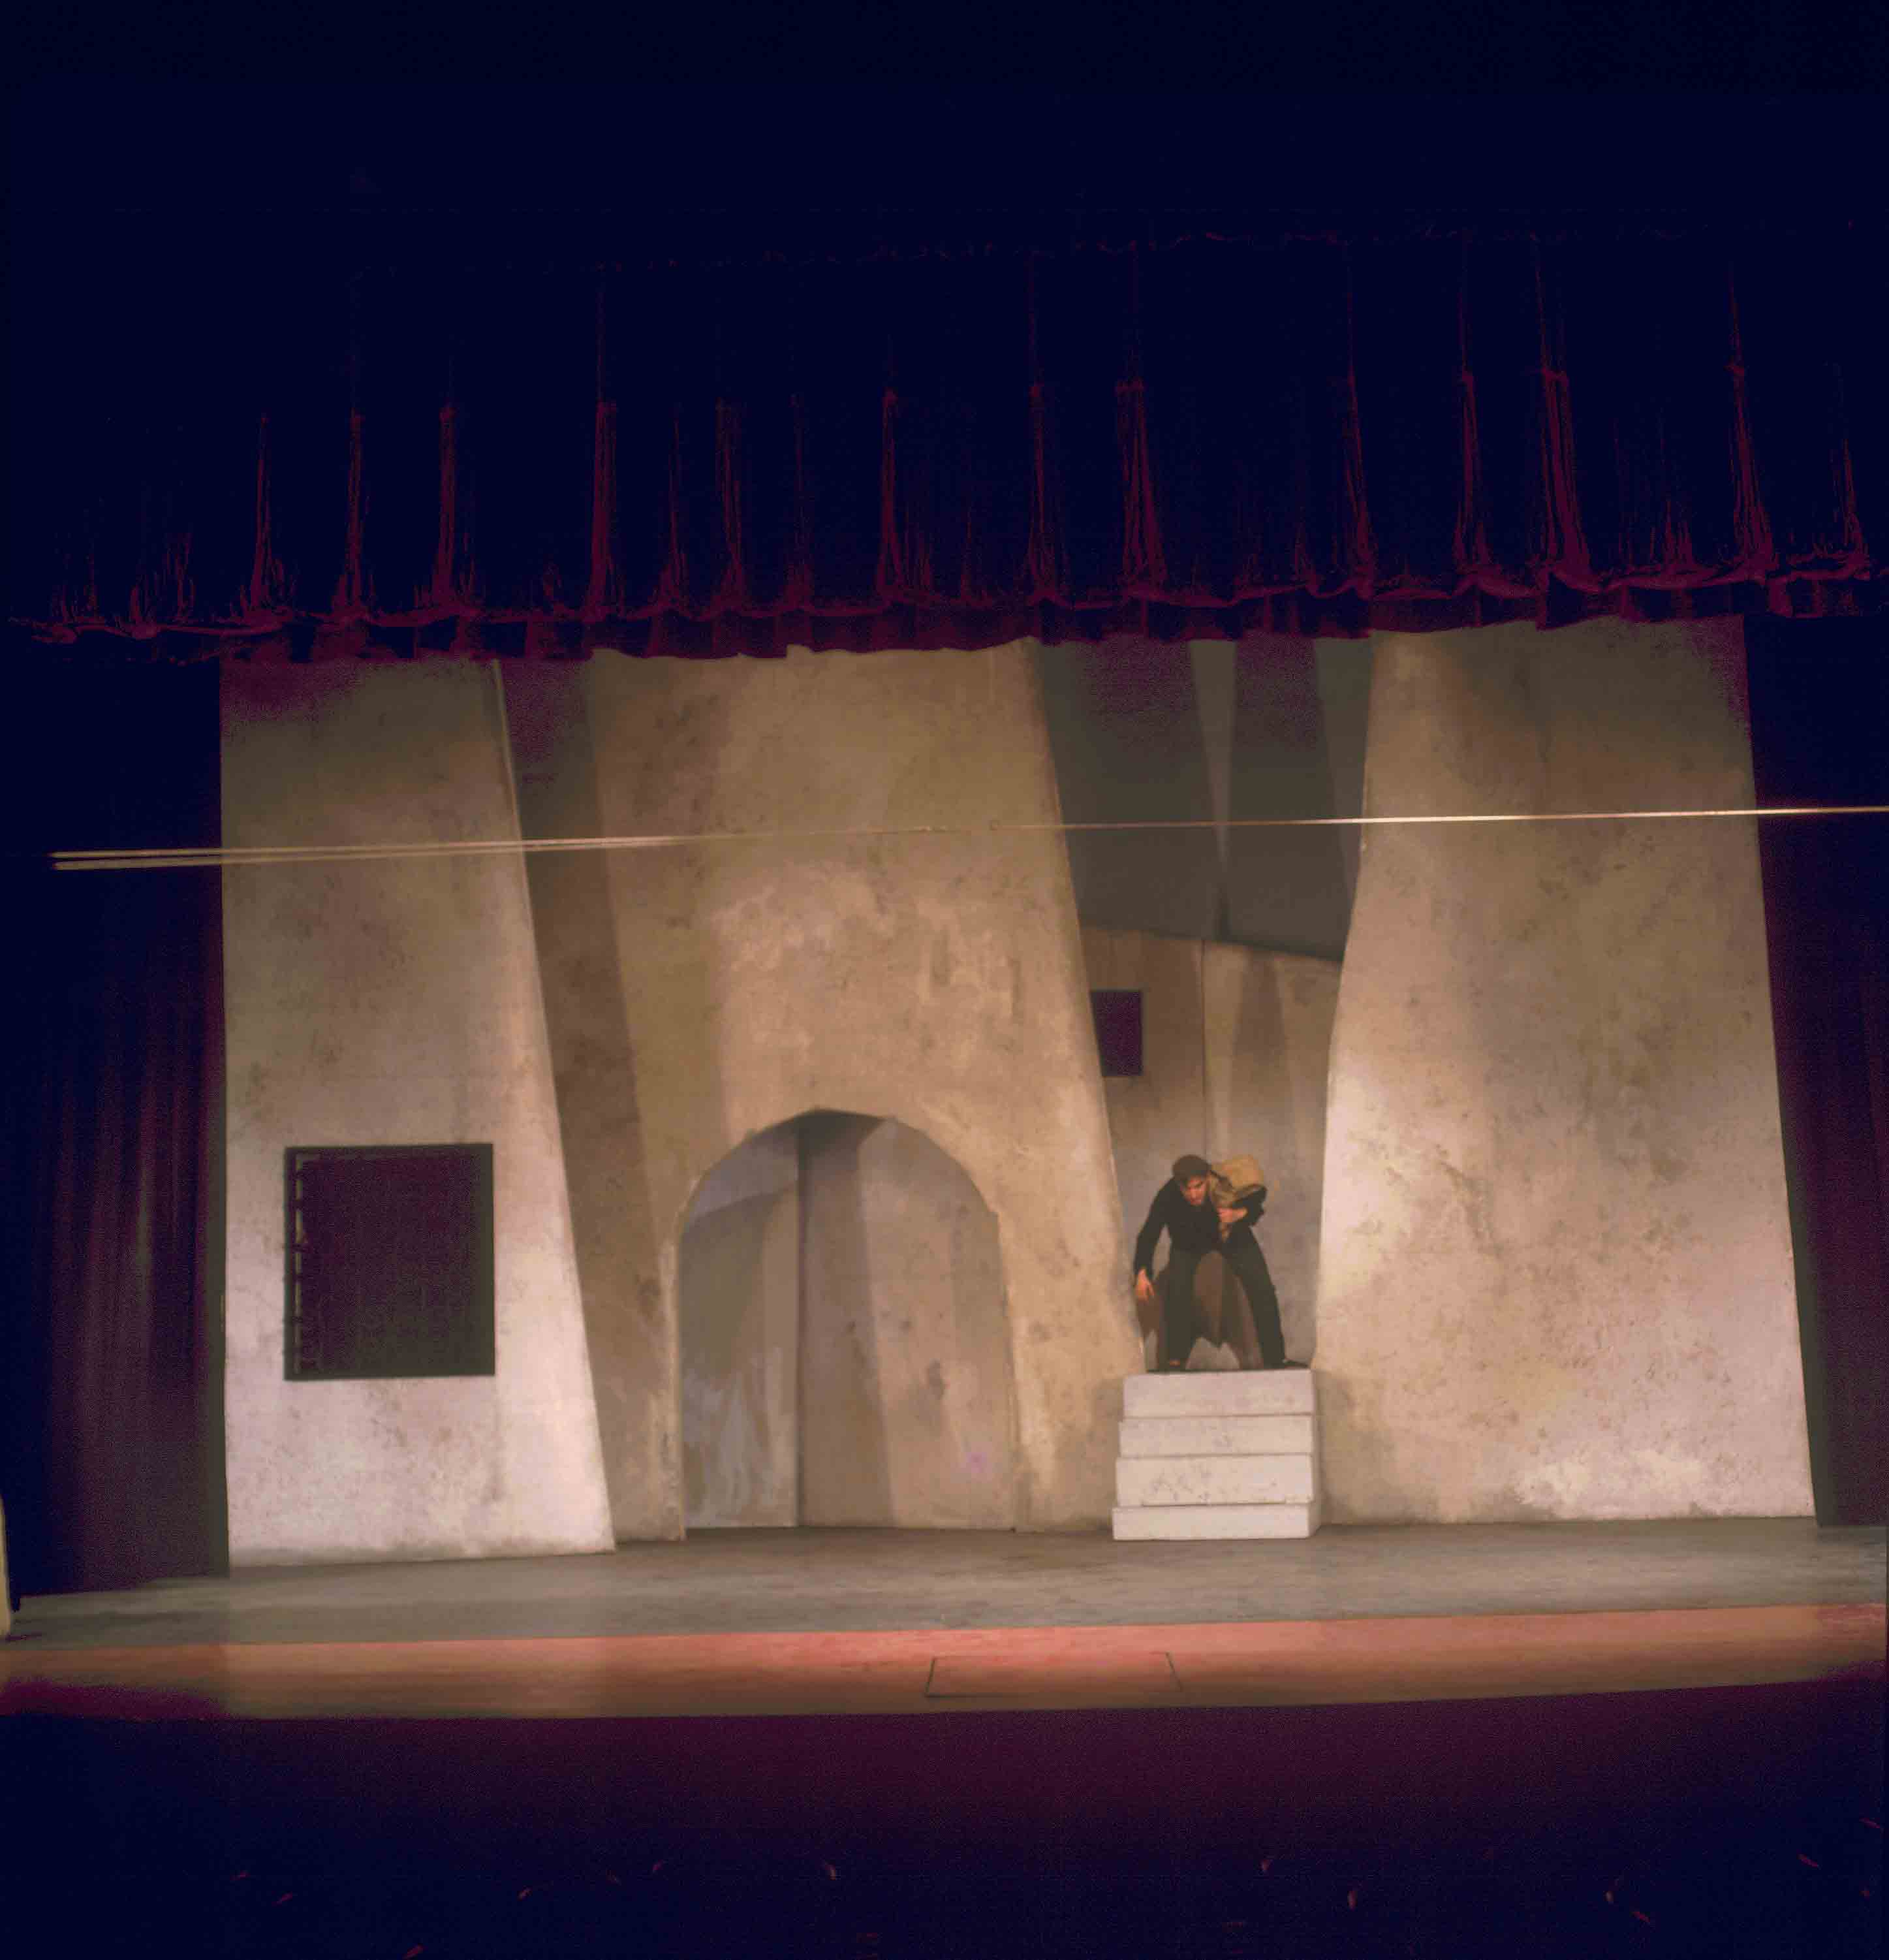 Fotografia. Pau Barceló. Ronda de mort a Sinera. Companyia Adrià Gual. Teatre Romea, 1970